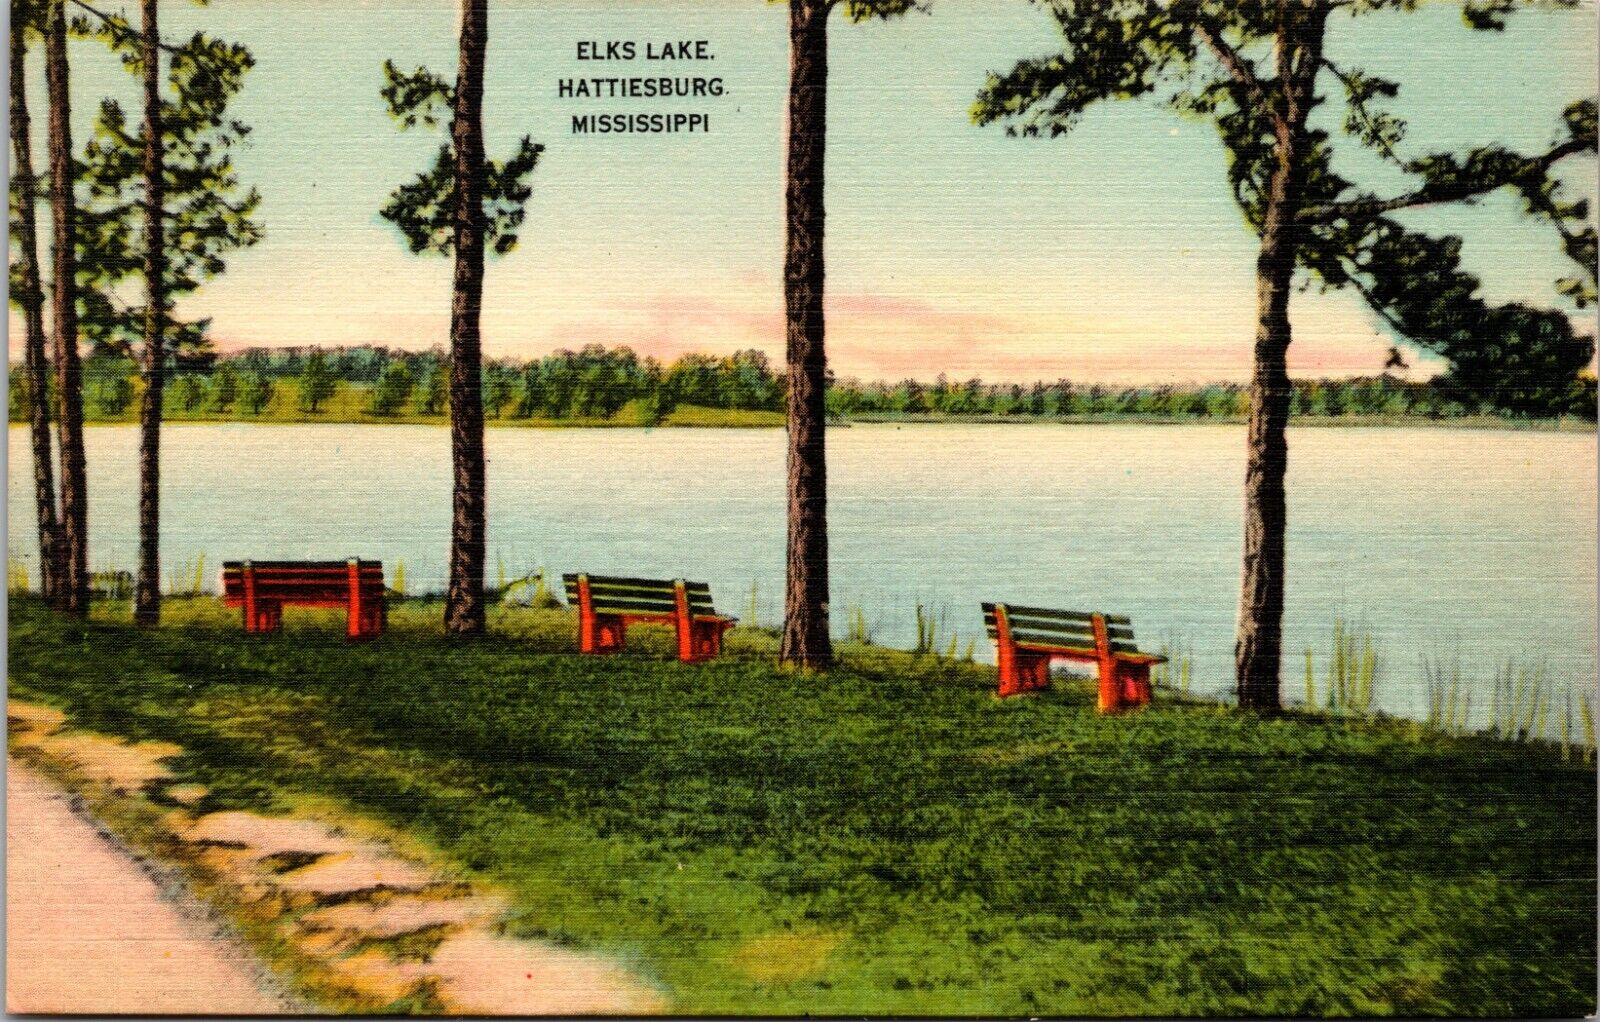 Elks Lake, Hattiesburg, Mississippi - Postcard